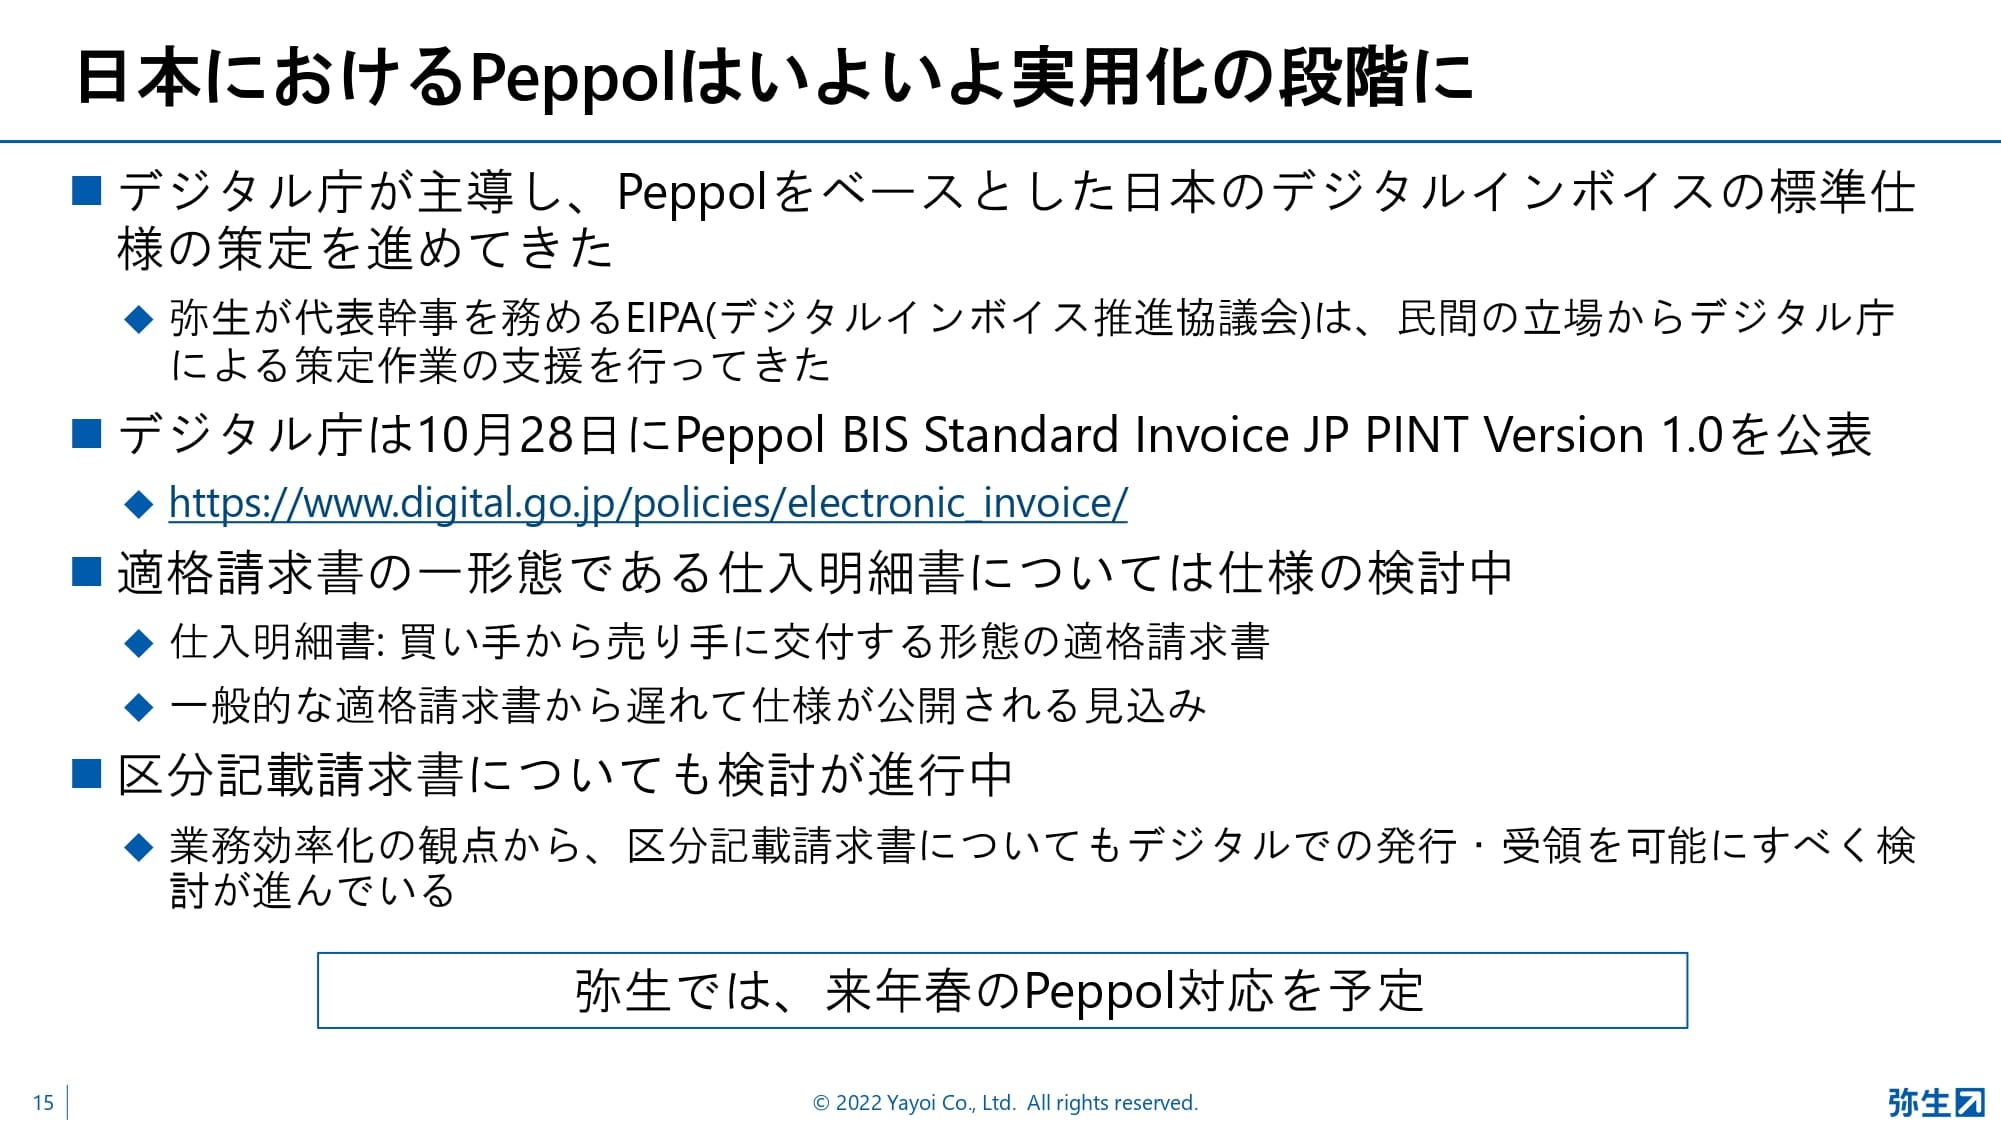 日本におけるPeppolはいよいよ実用化の段階に